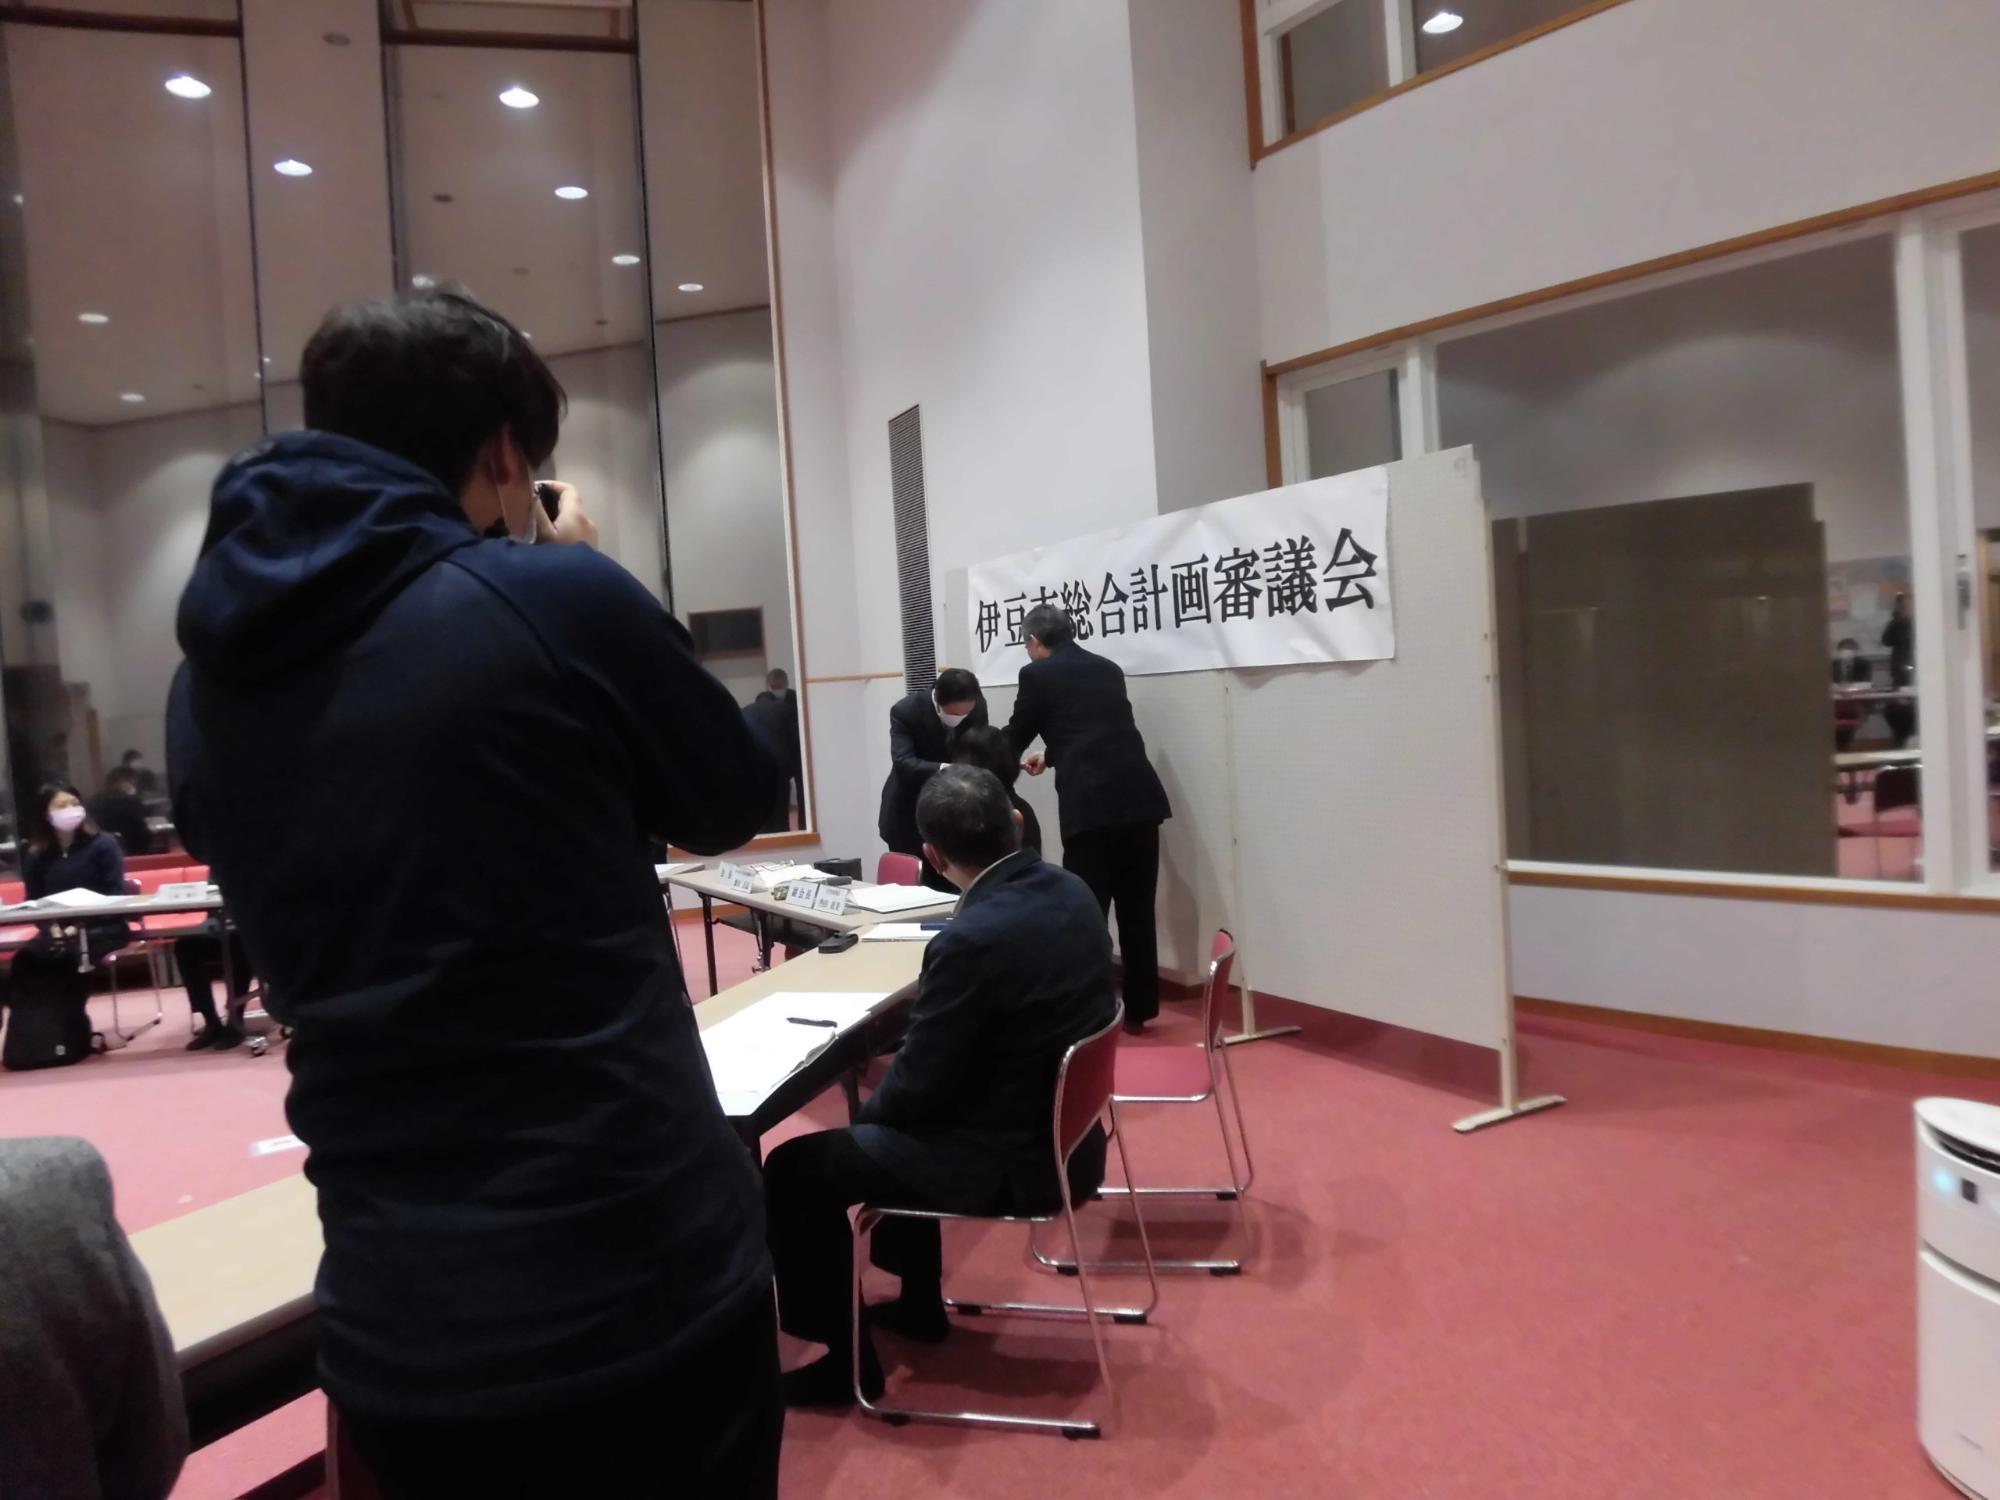 市長が飯田会長に諮問書を手渡しする様子を右側から撮影した写真